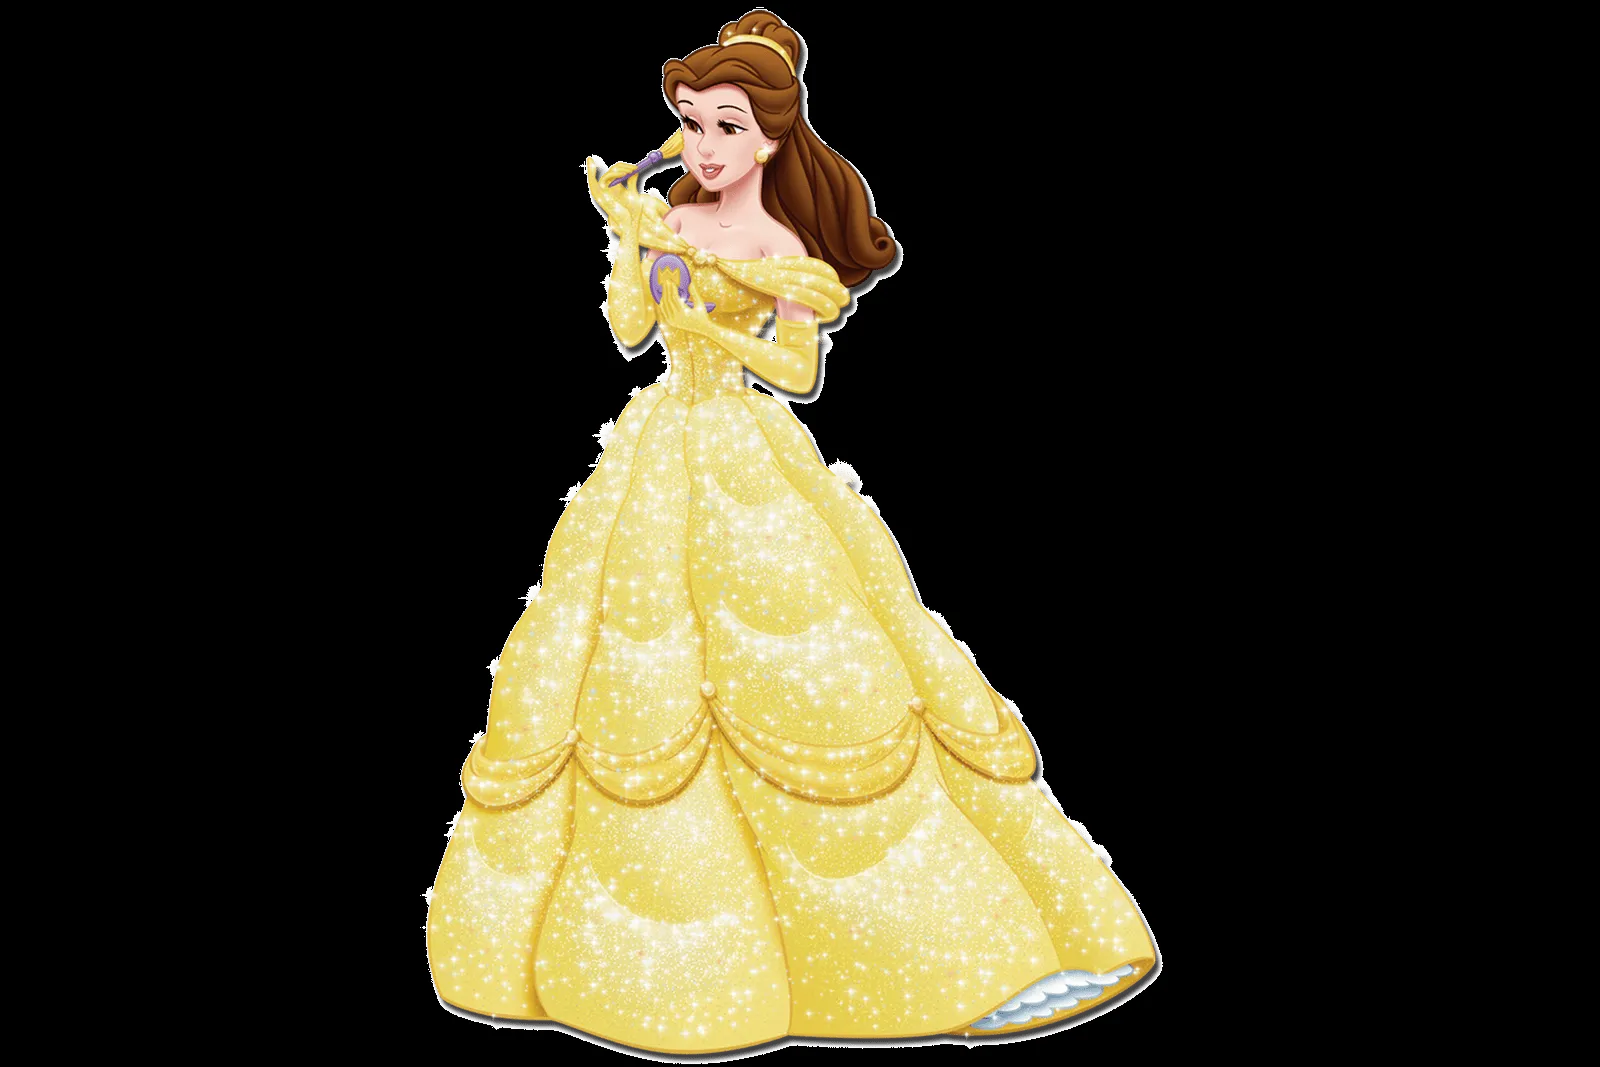 Princesa bella Disney png - Imagui